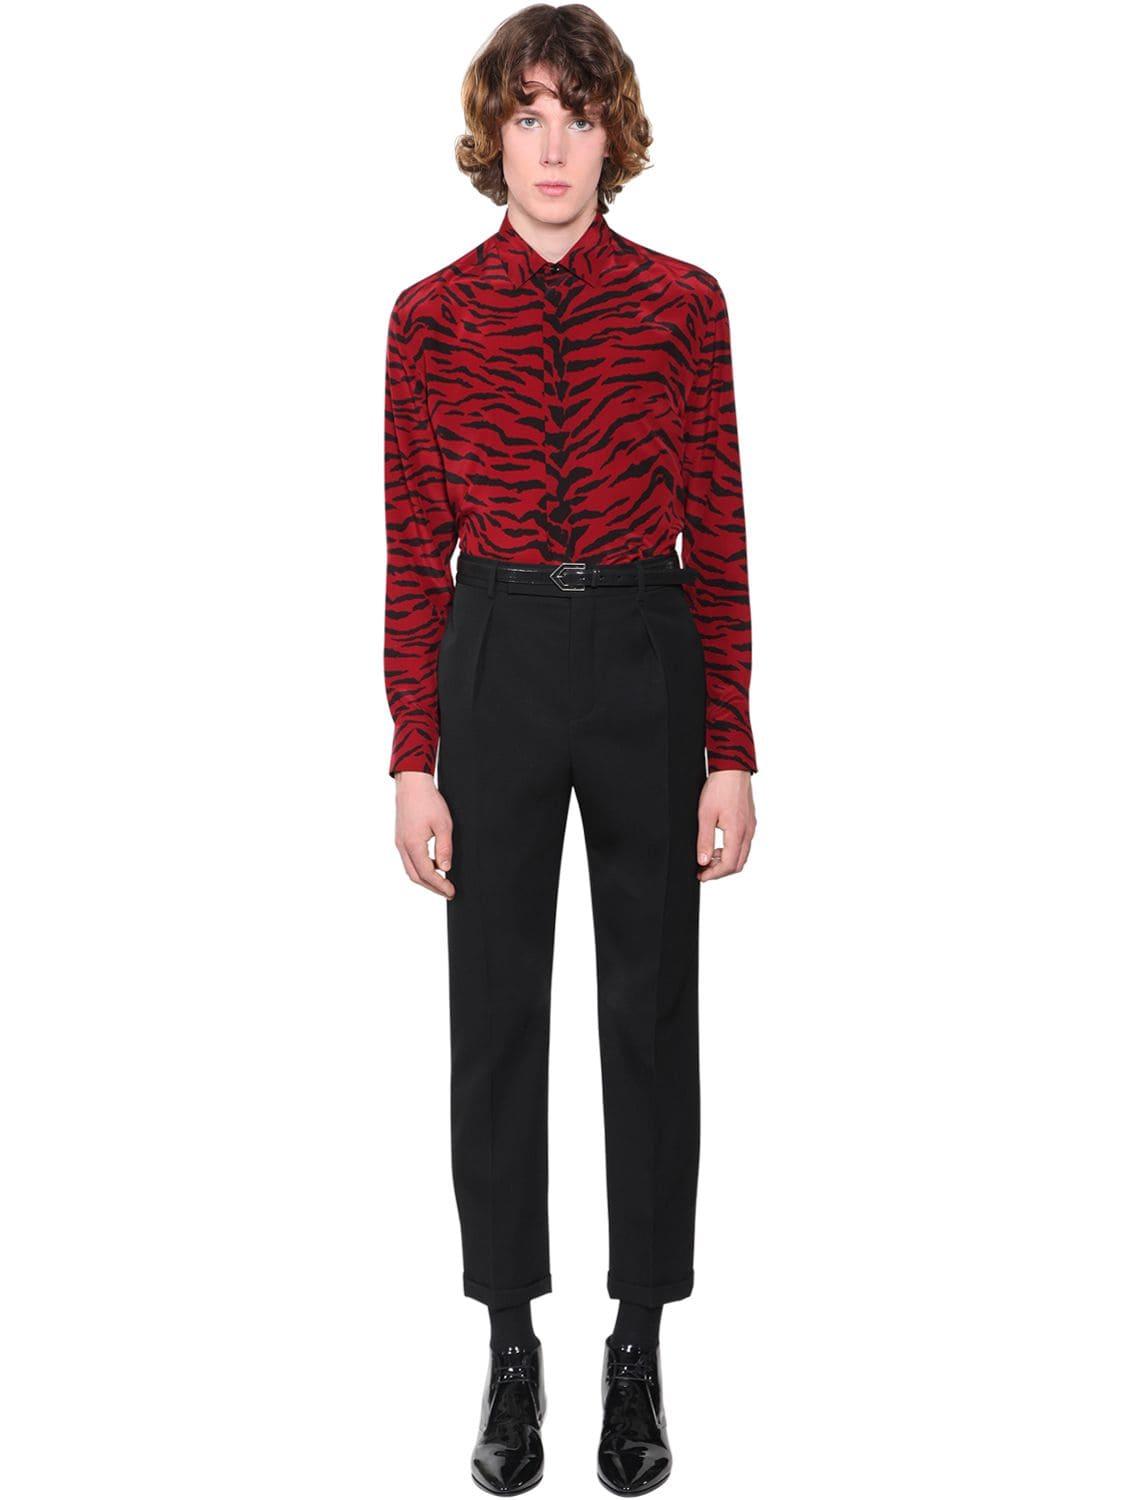 Saint Laurent Zebra Print Silk Shirt in Red/Black (Red) for Men | Lyst